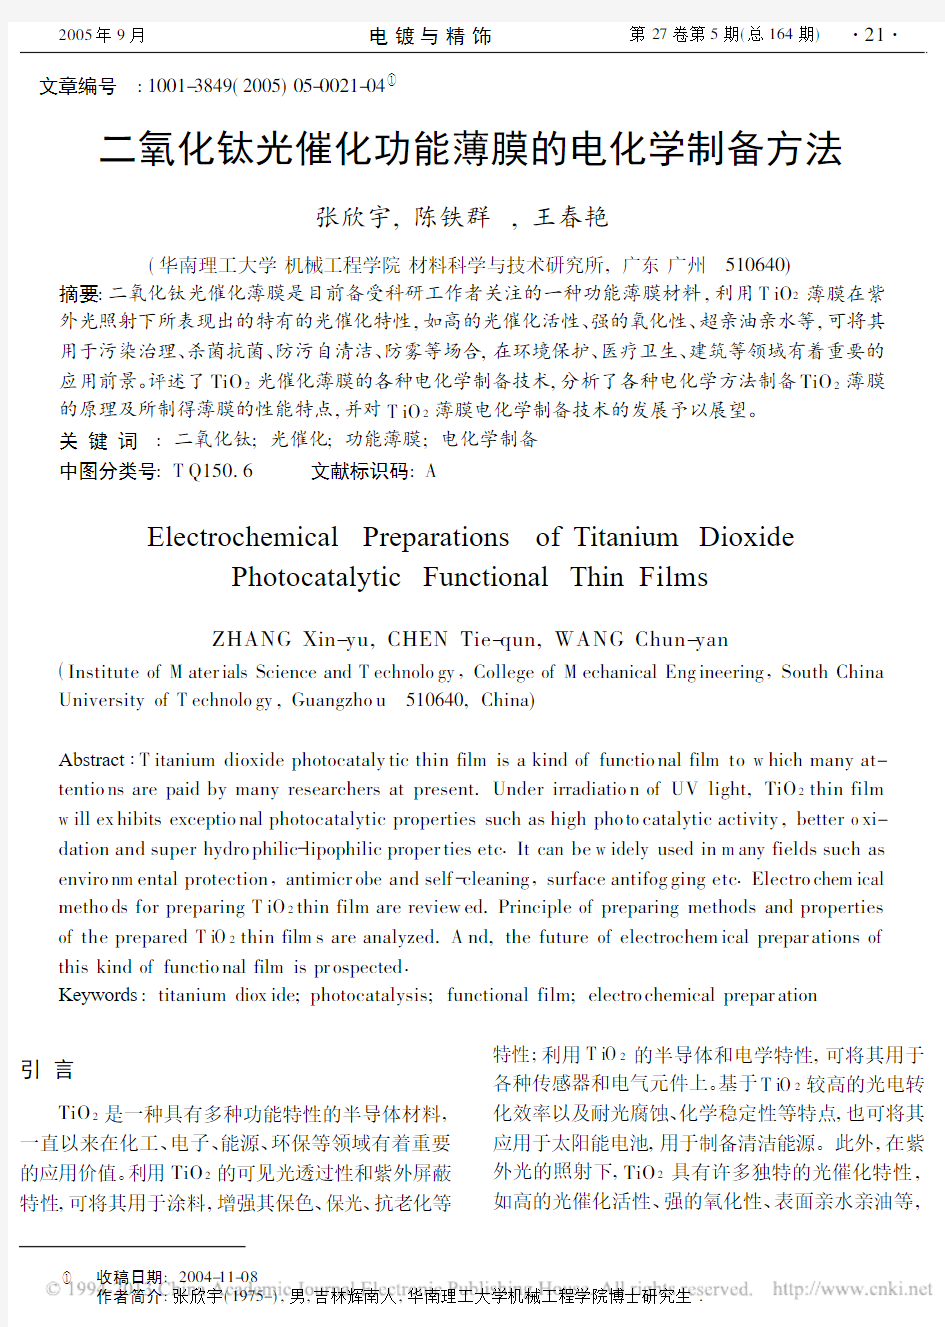 二氧化钛光催化功能薄膜的电化学制备方法_张欣宇